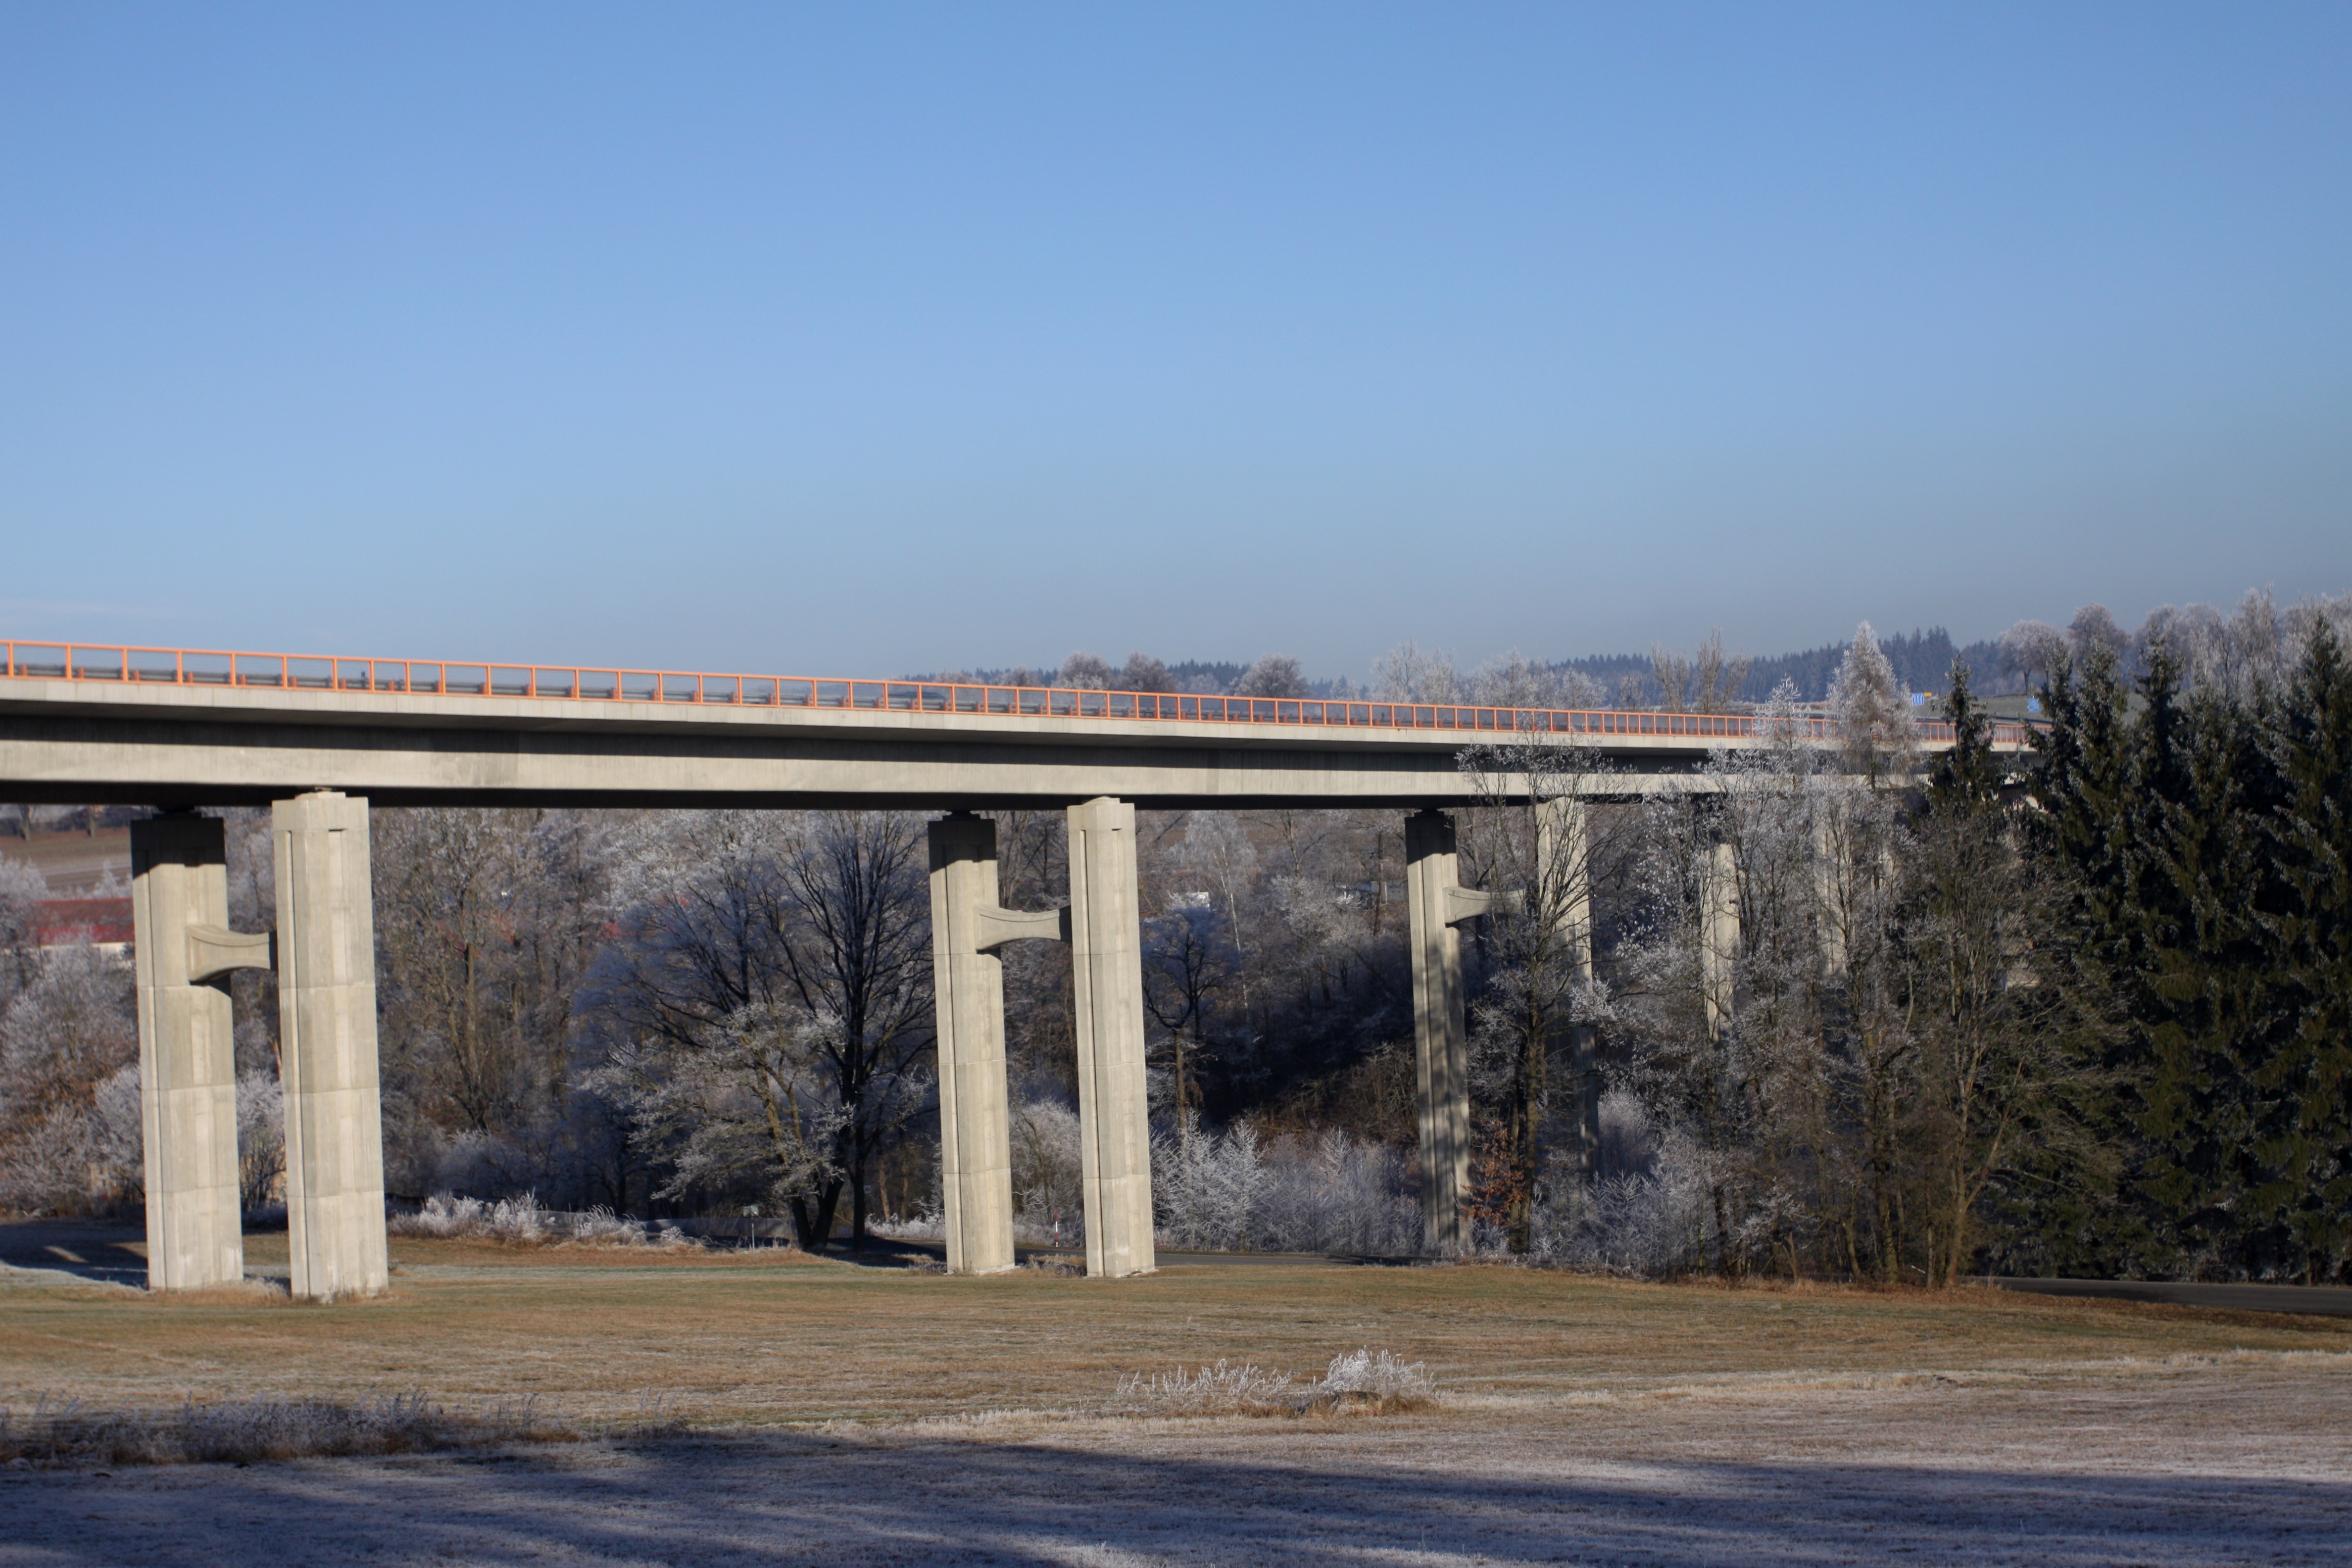 Speciální nadchody (ekodukty) a dostatečně velké mosty (podchody) umožňují živočichům bezpečné překonání dálnice. Foto Václav Hlaváč